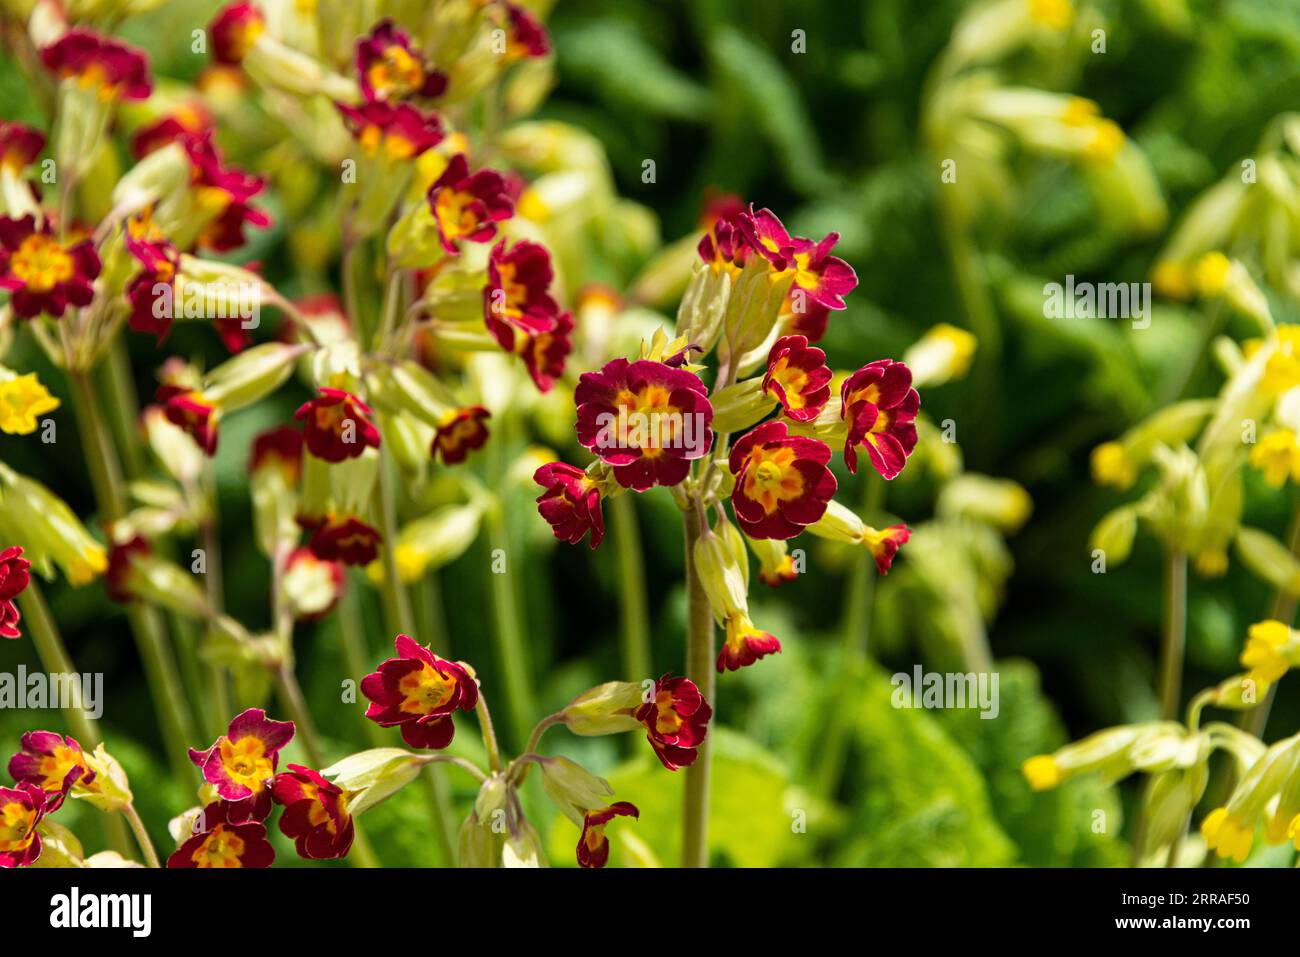 A red cowslip (Primula) Stock Photo